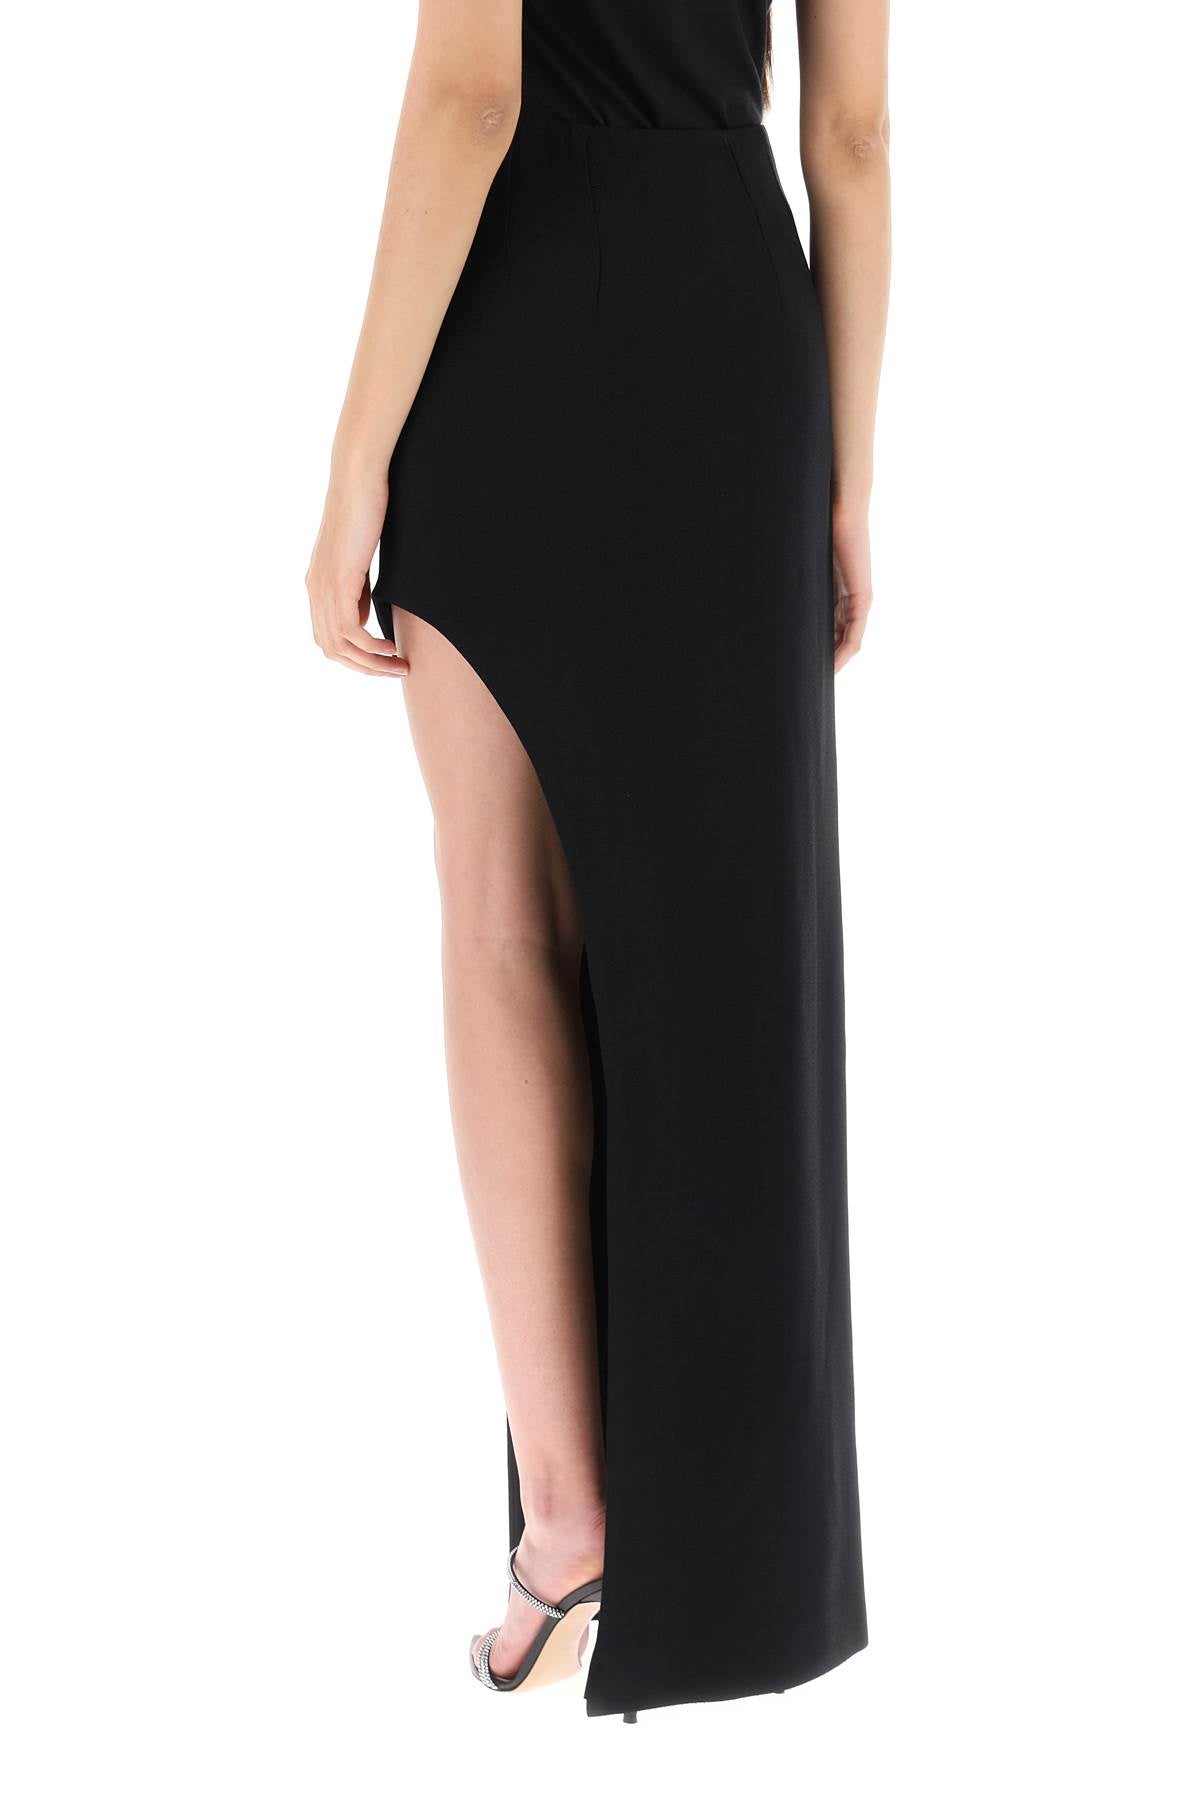 Mvp wardrobe 'plaza' skirt with asymmetrical hem-2